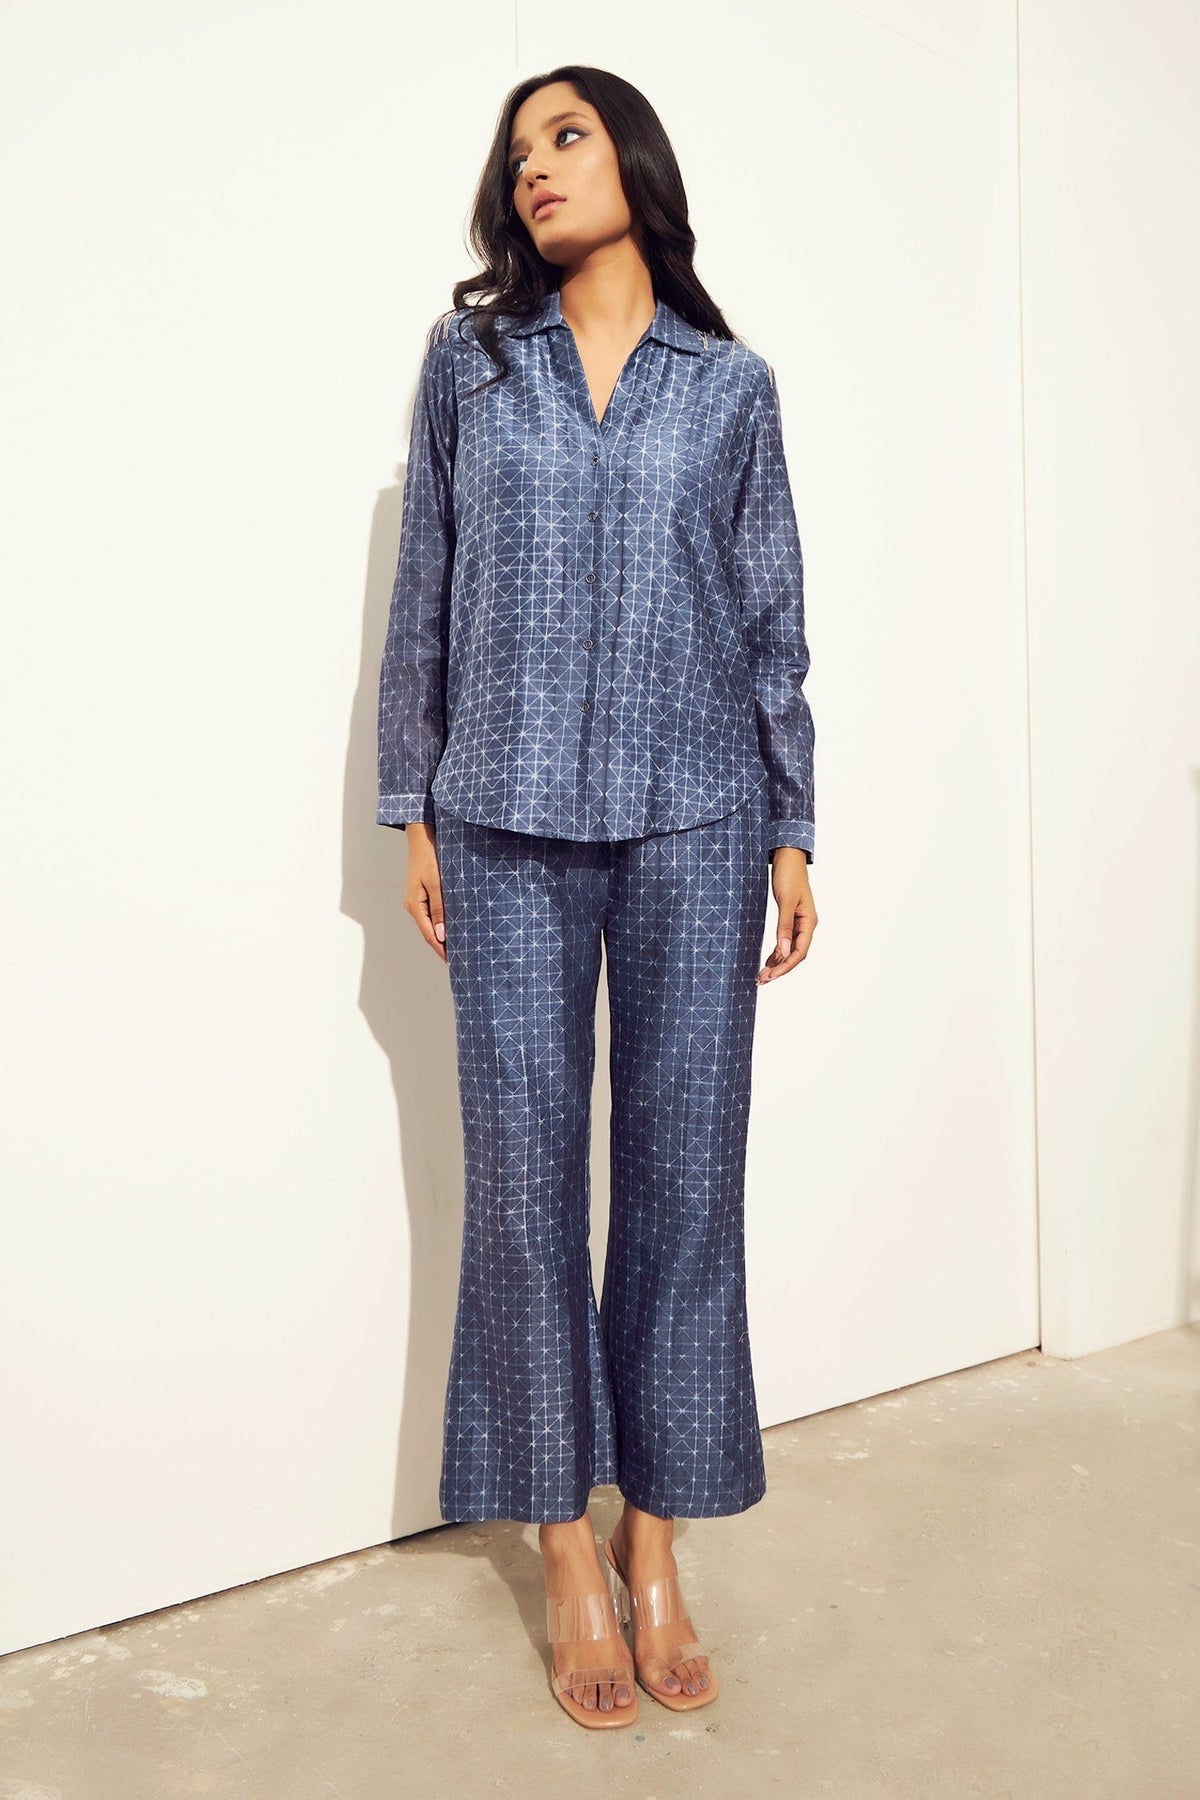 Blue Chanderi Cotton Silk Tie And Dye Shibori Shirt Pattern & Pant Set For Women